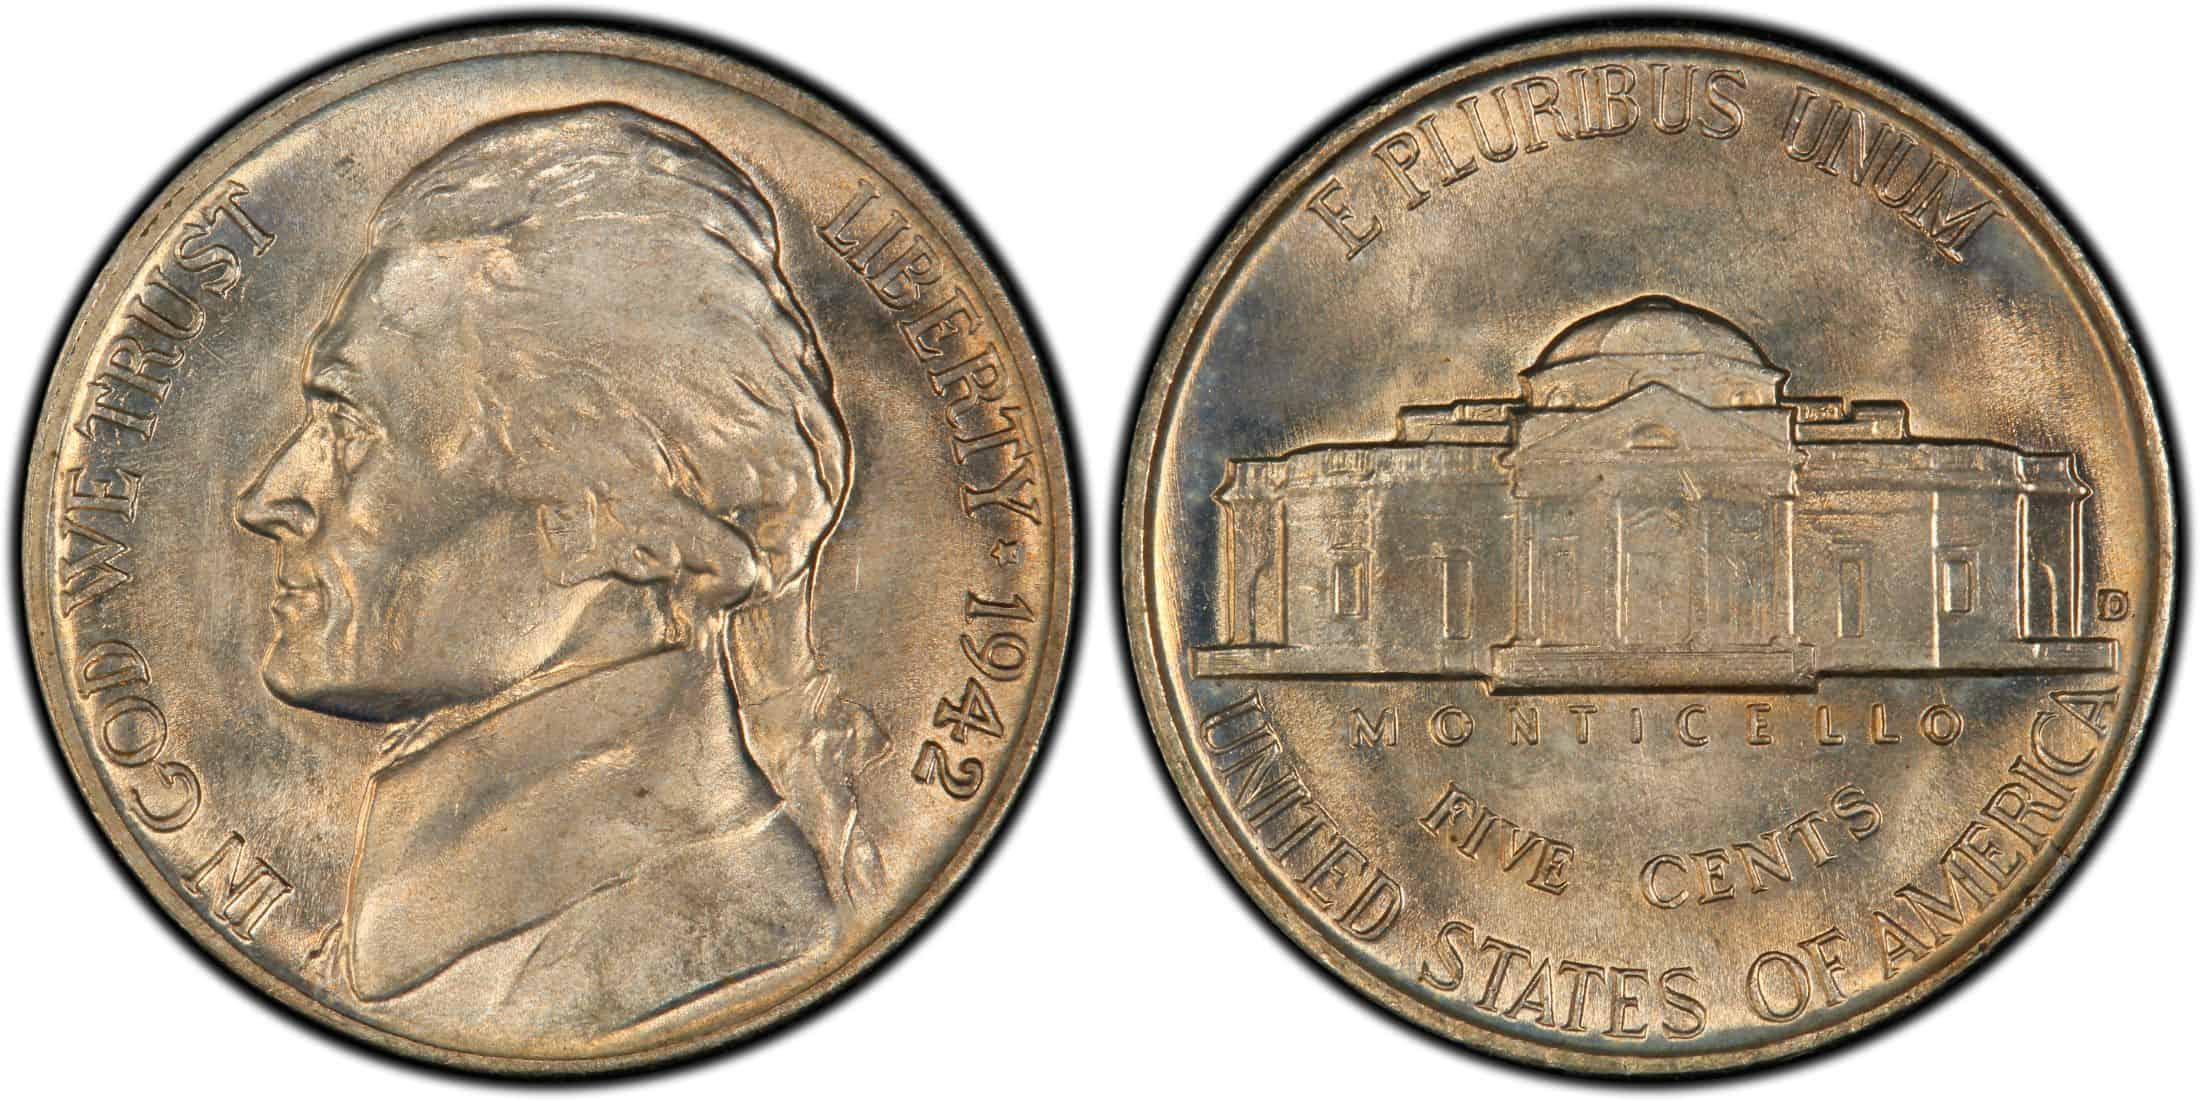 1942 D Nickel Value